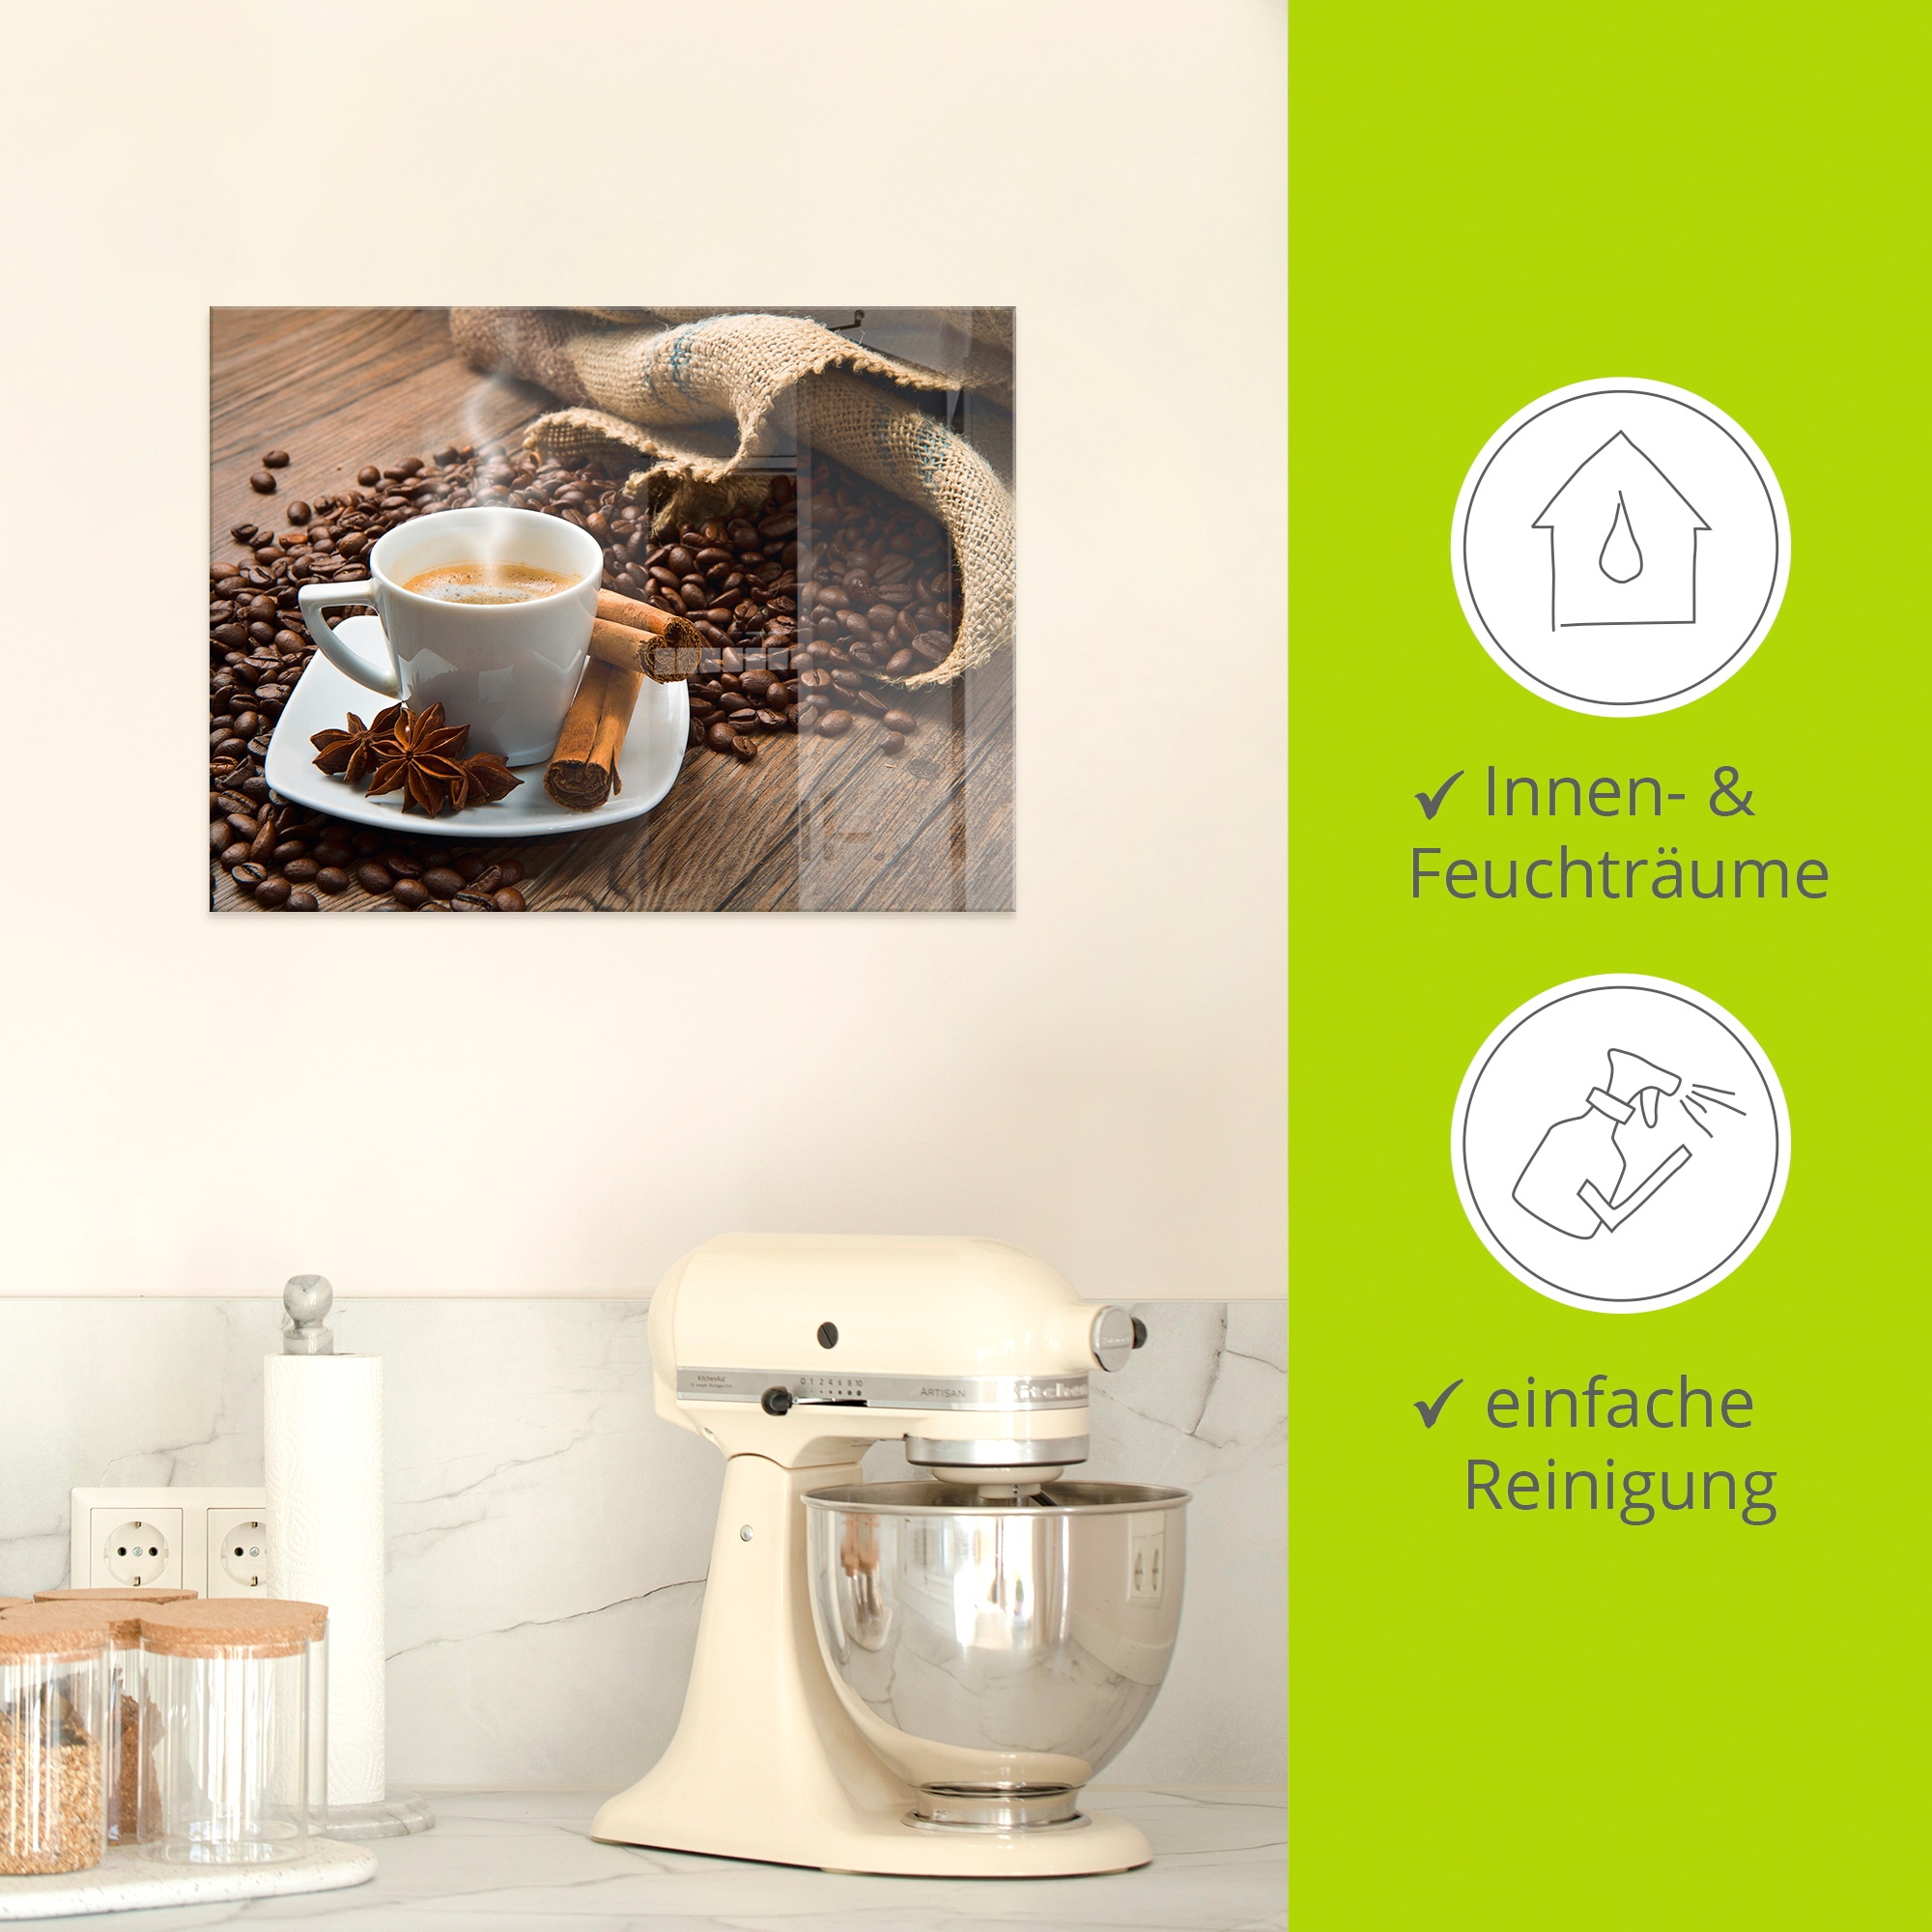 Artland Glasbild »Kaffeetasse Leinensack mit Kaffeebohnen«, Getränke, (1 St.), in verschiedenen Grössen